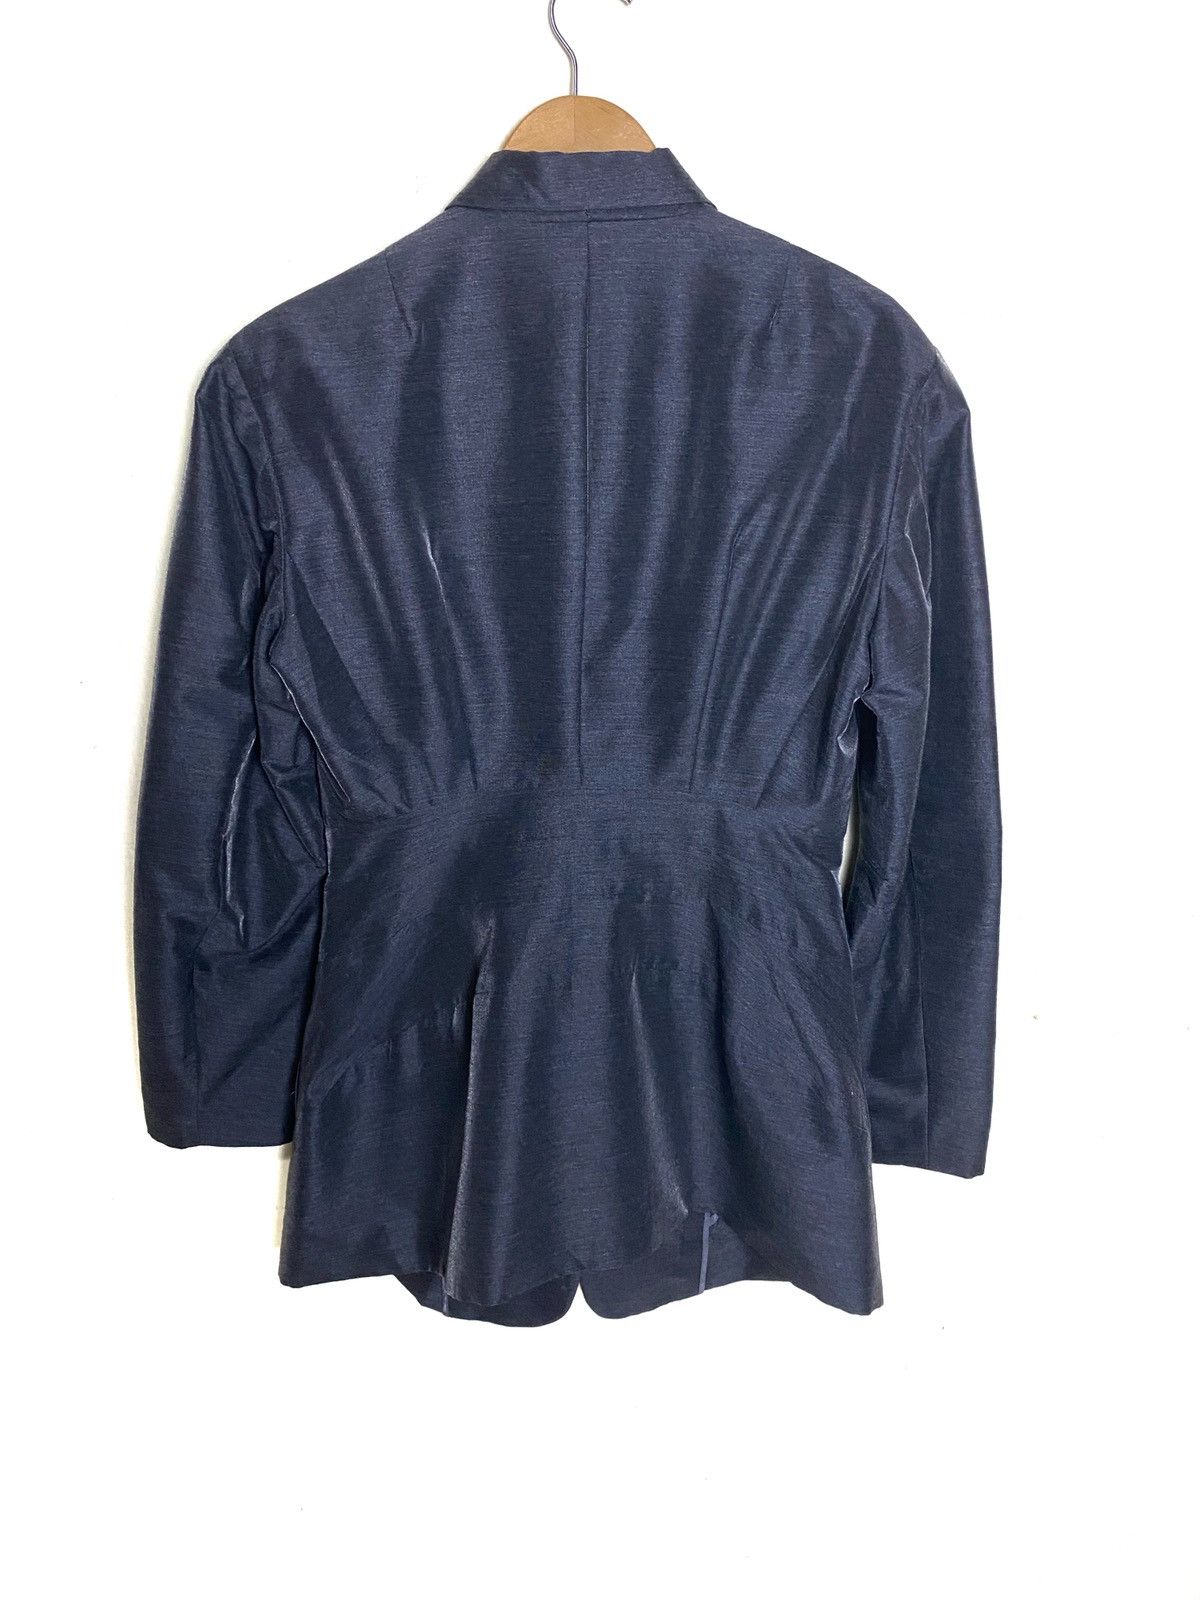 Vintage Issey Miyake Jacket - 6